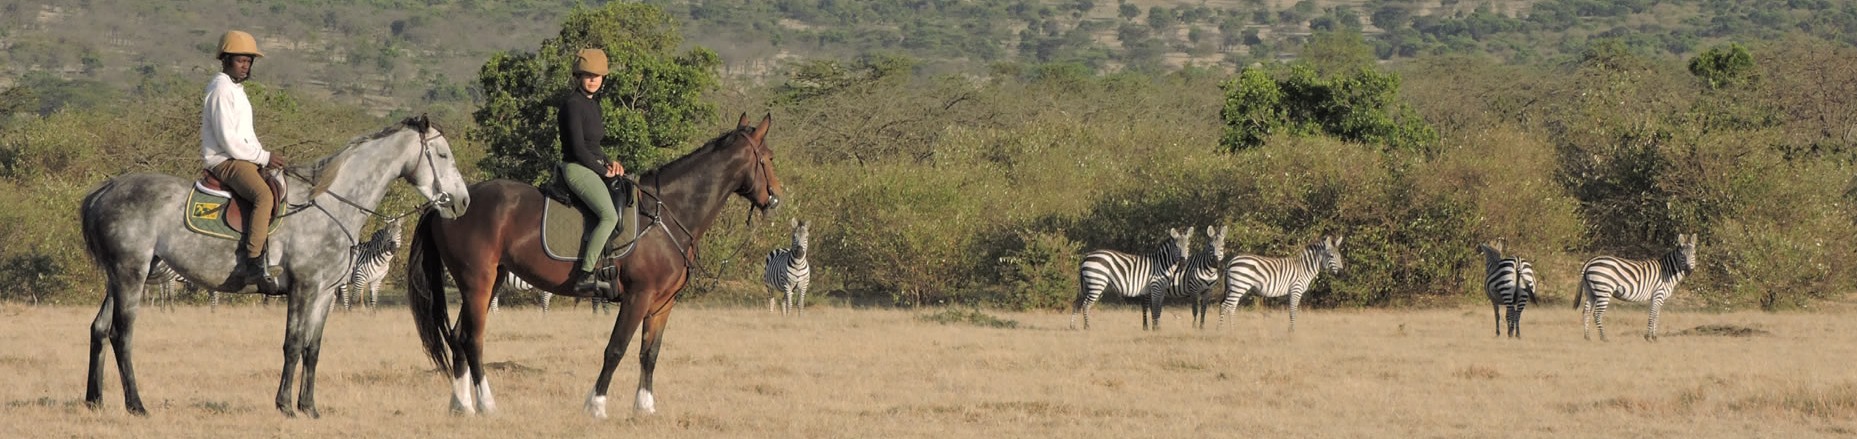 Horseridung Masai Mara